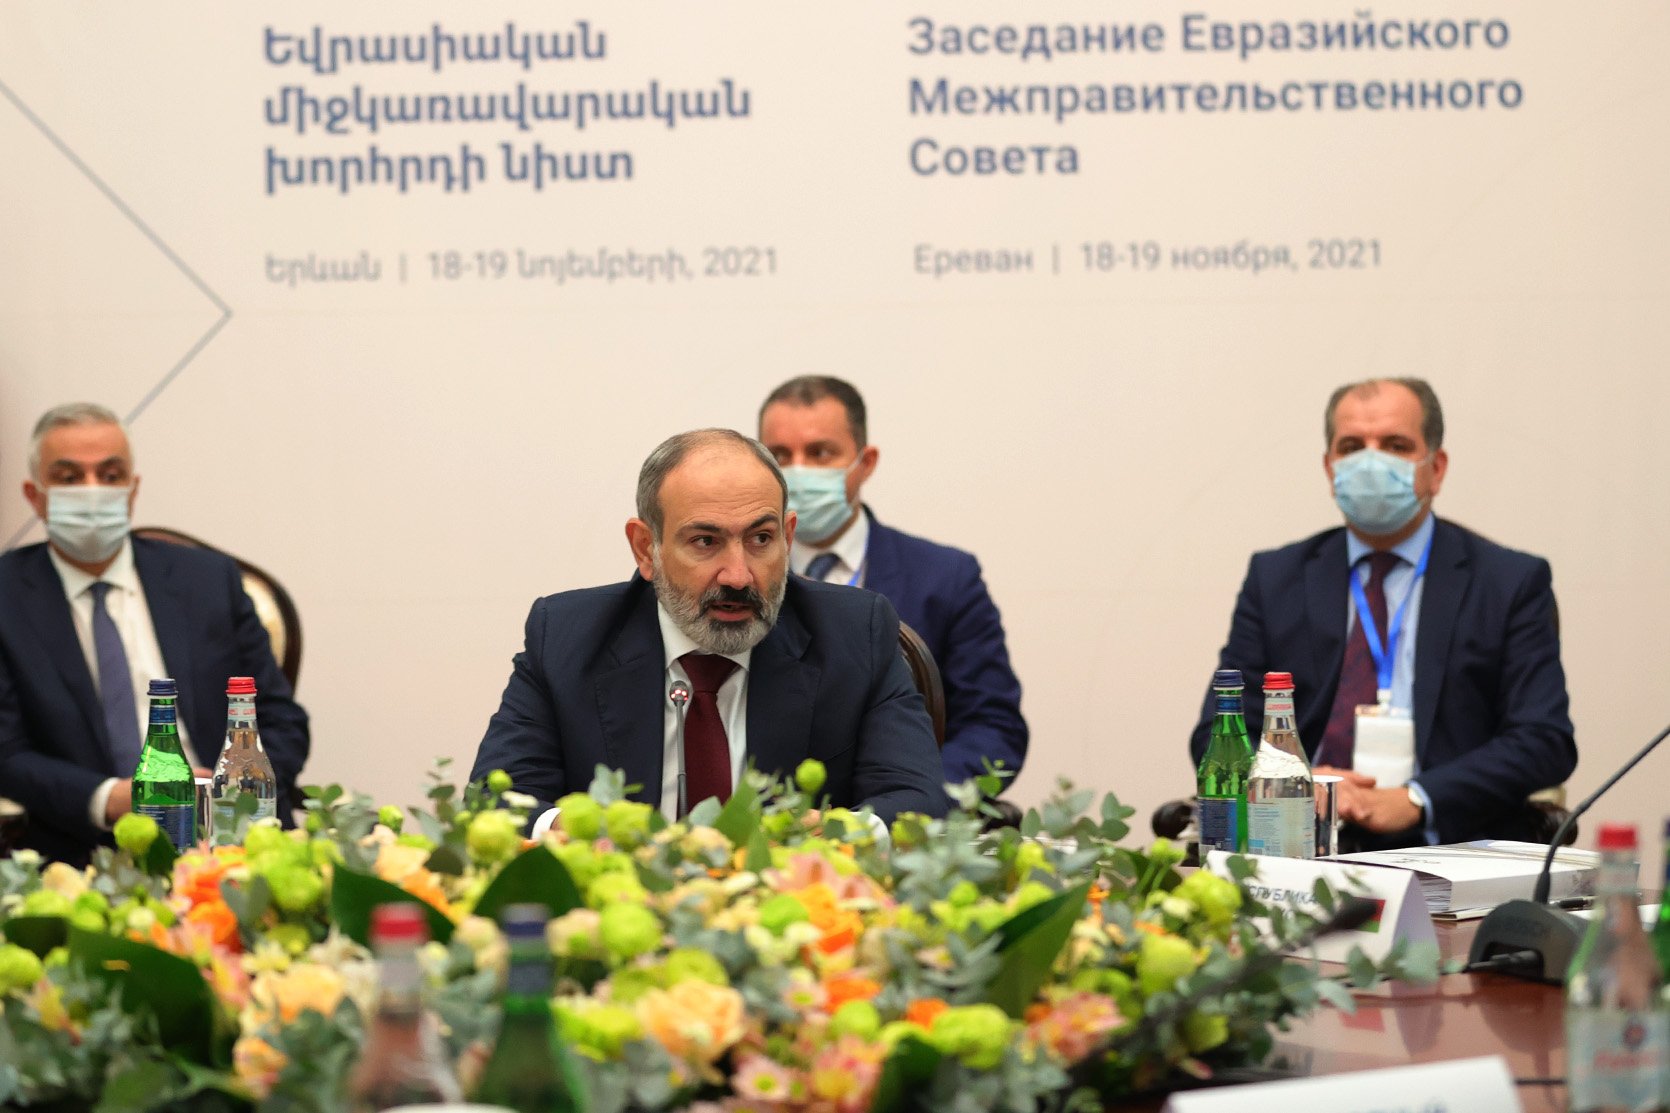 Երևանում տեղի է ունեցել Եվրասիական միջկառավարական խորհրդի նեղ կազմով նիստը